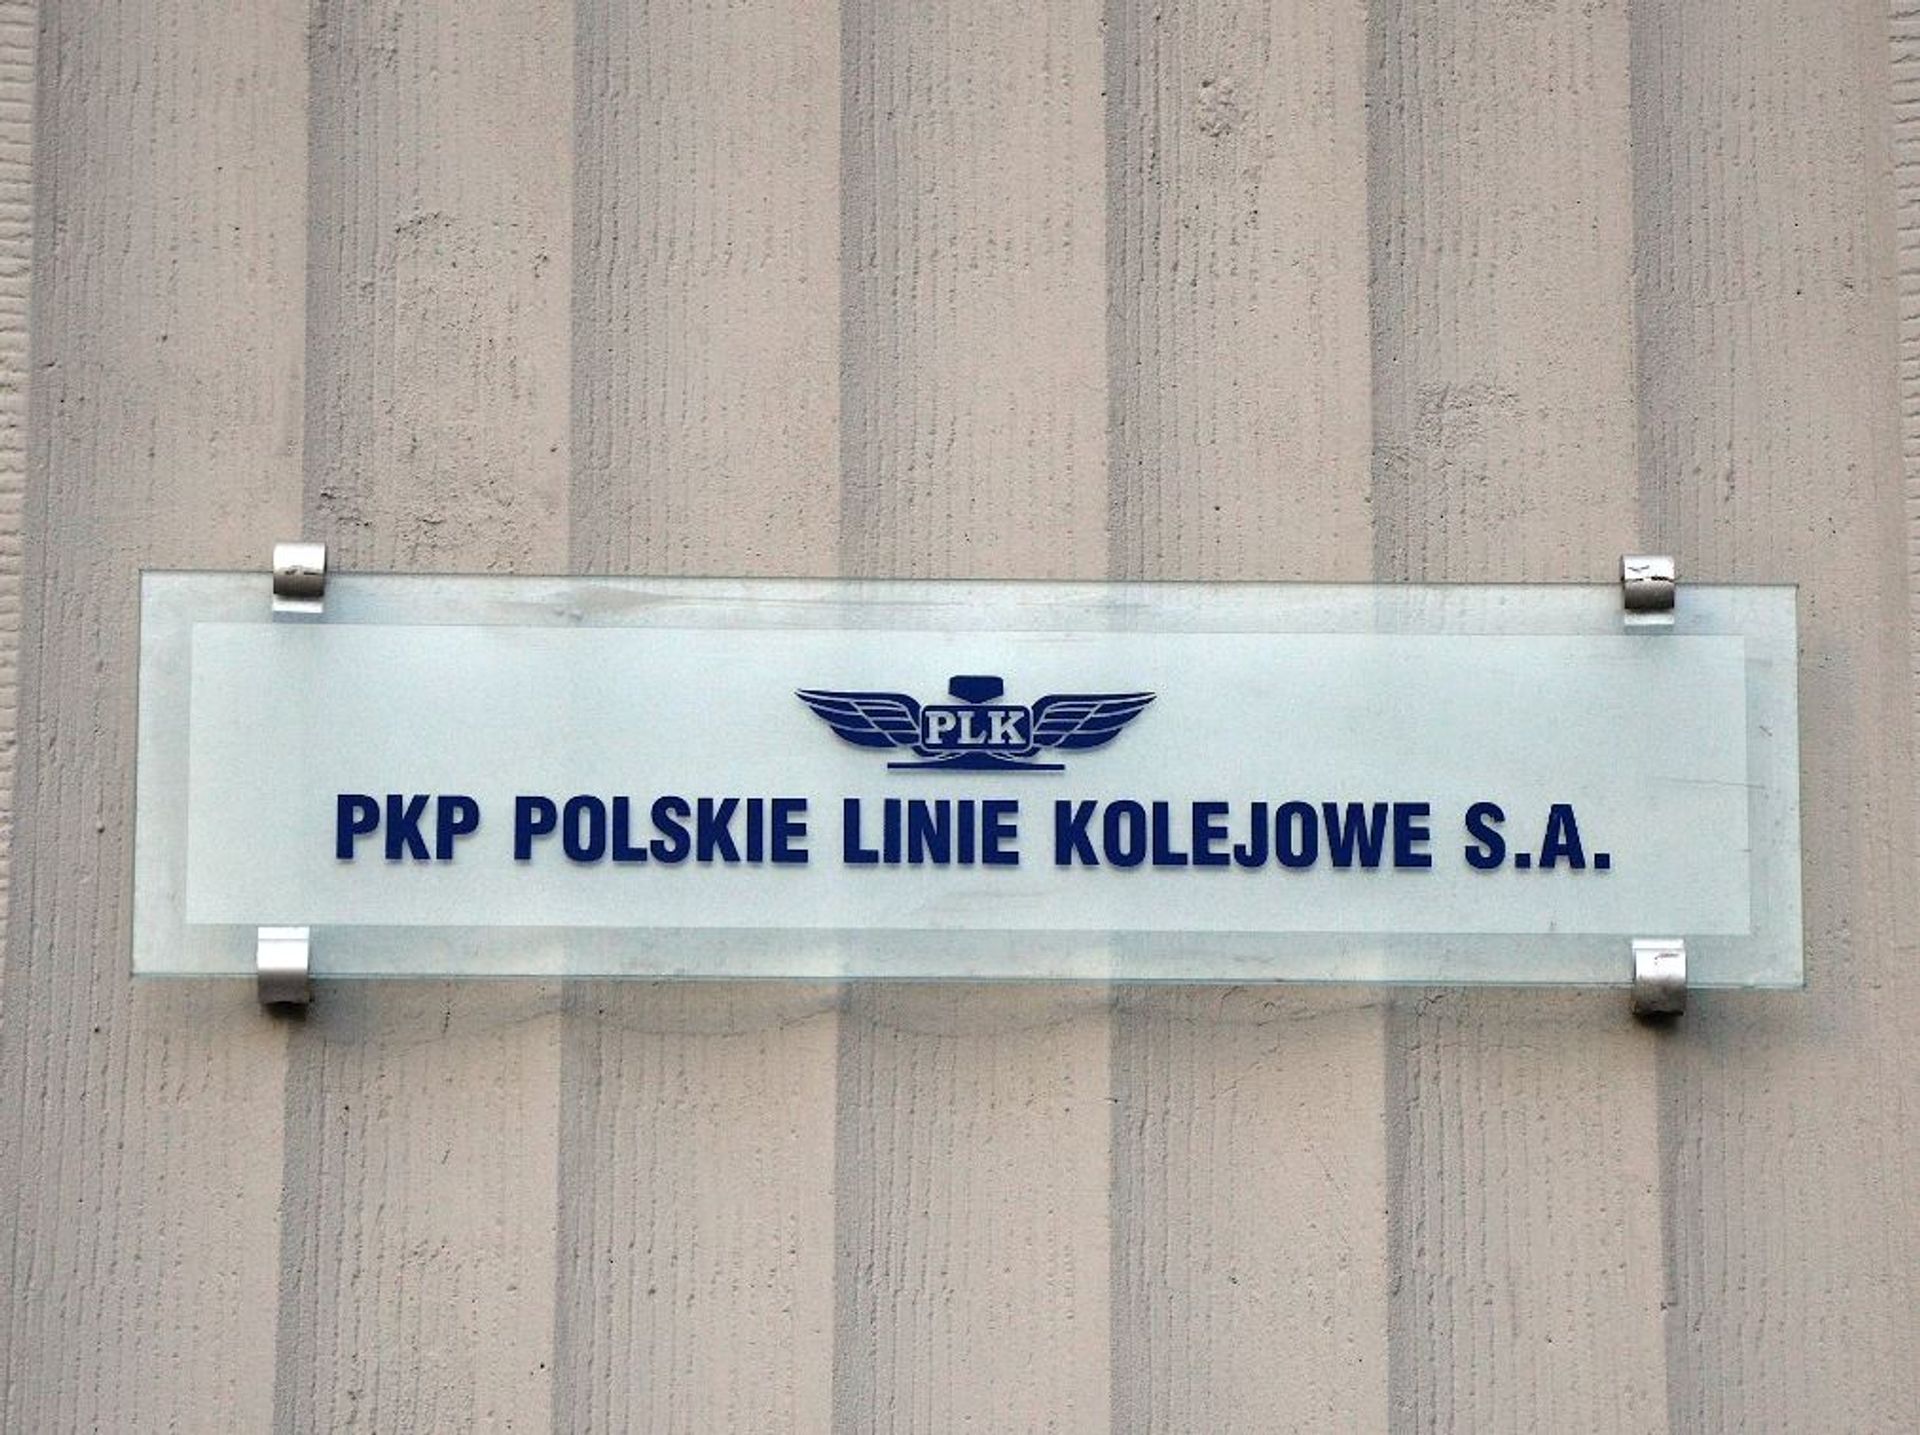 Rekordowa strata finansowa PKP Polskich Linii Kolejowych S.A. za rok 2023